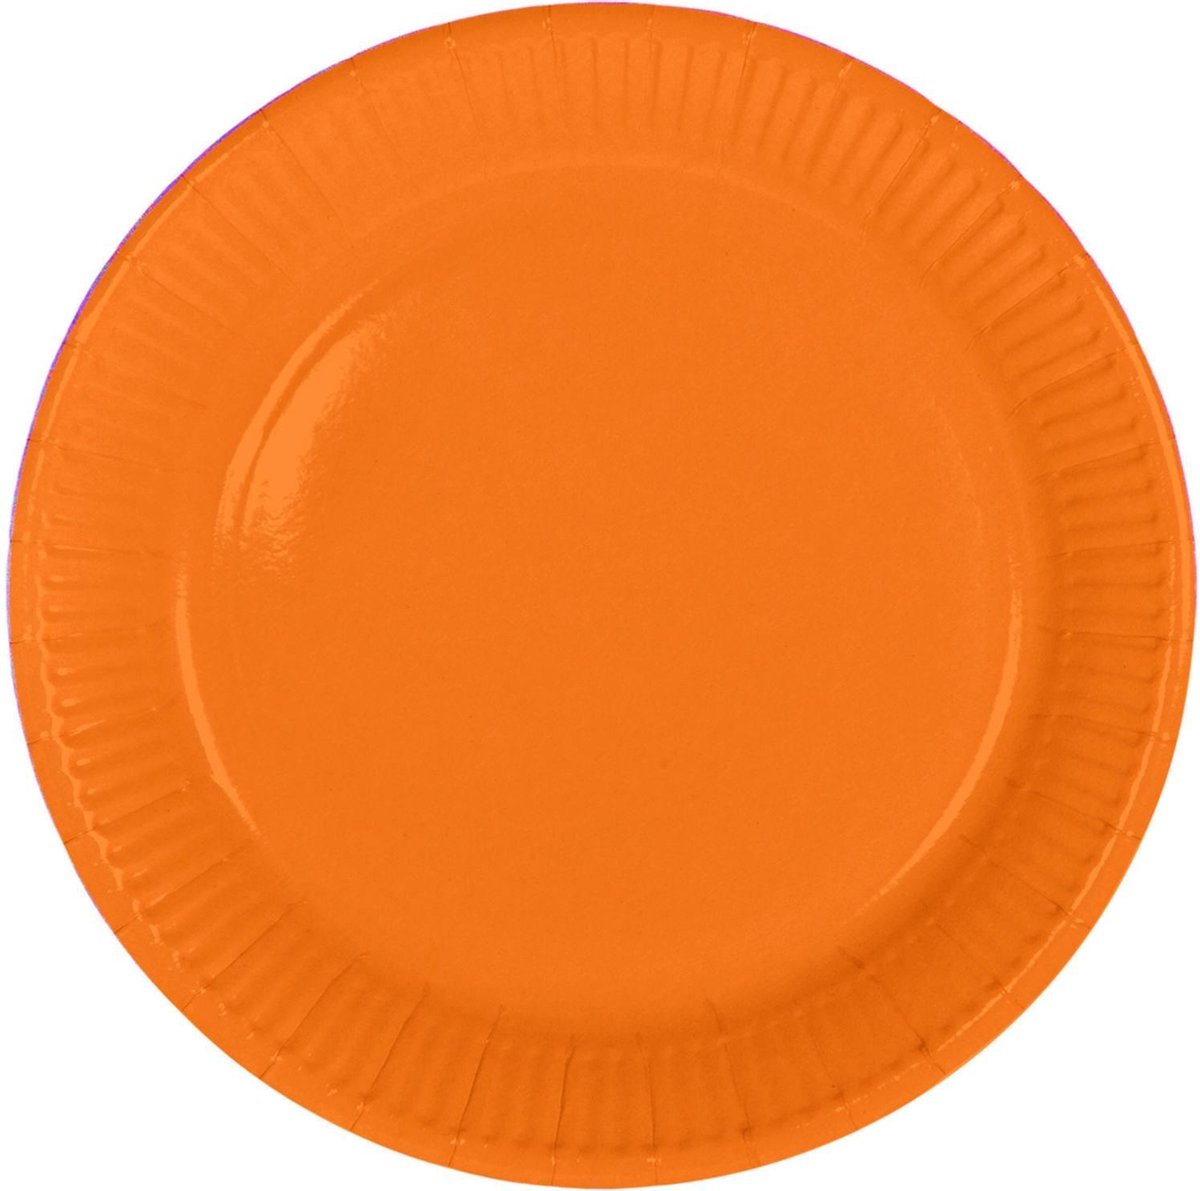 16x stuks party gebak/eet bordjes van papier oranje 23 cm - Uni kleuren thema voor verjaardag of feestje